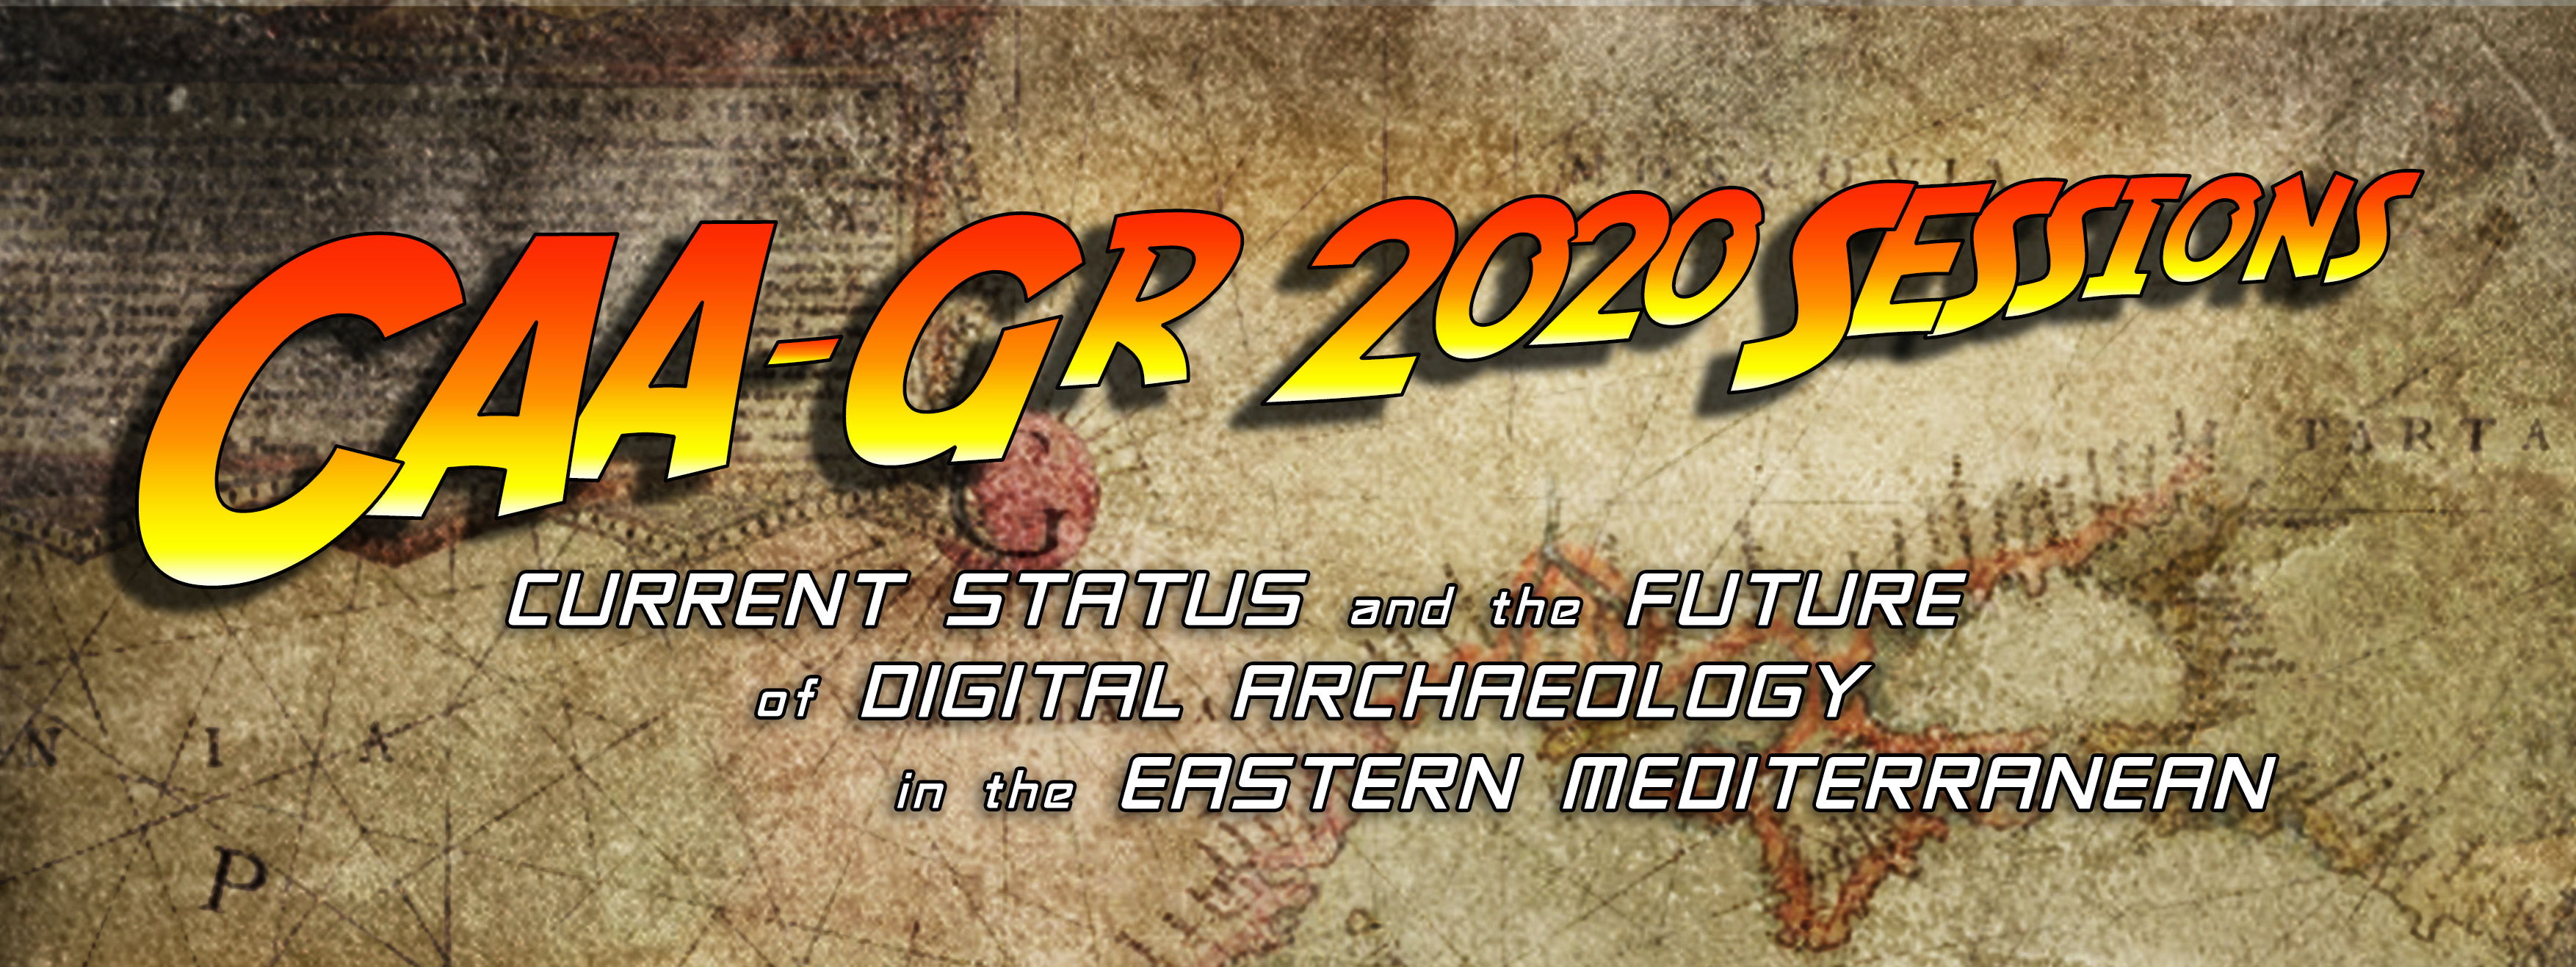 CAA-GR 2020 Sessions header